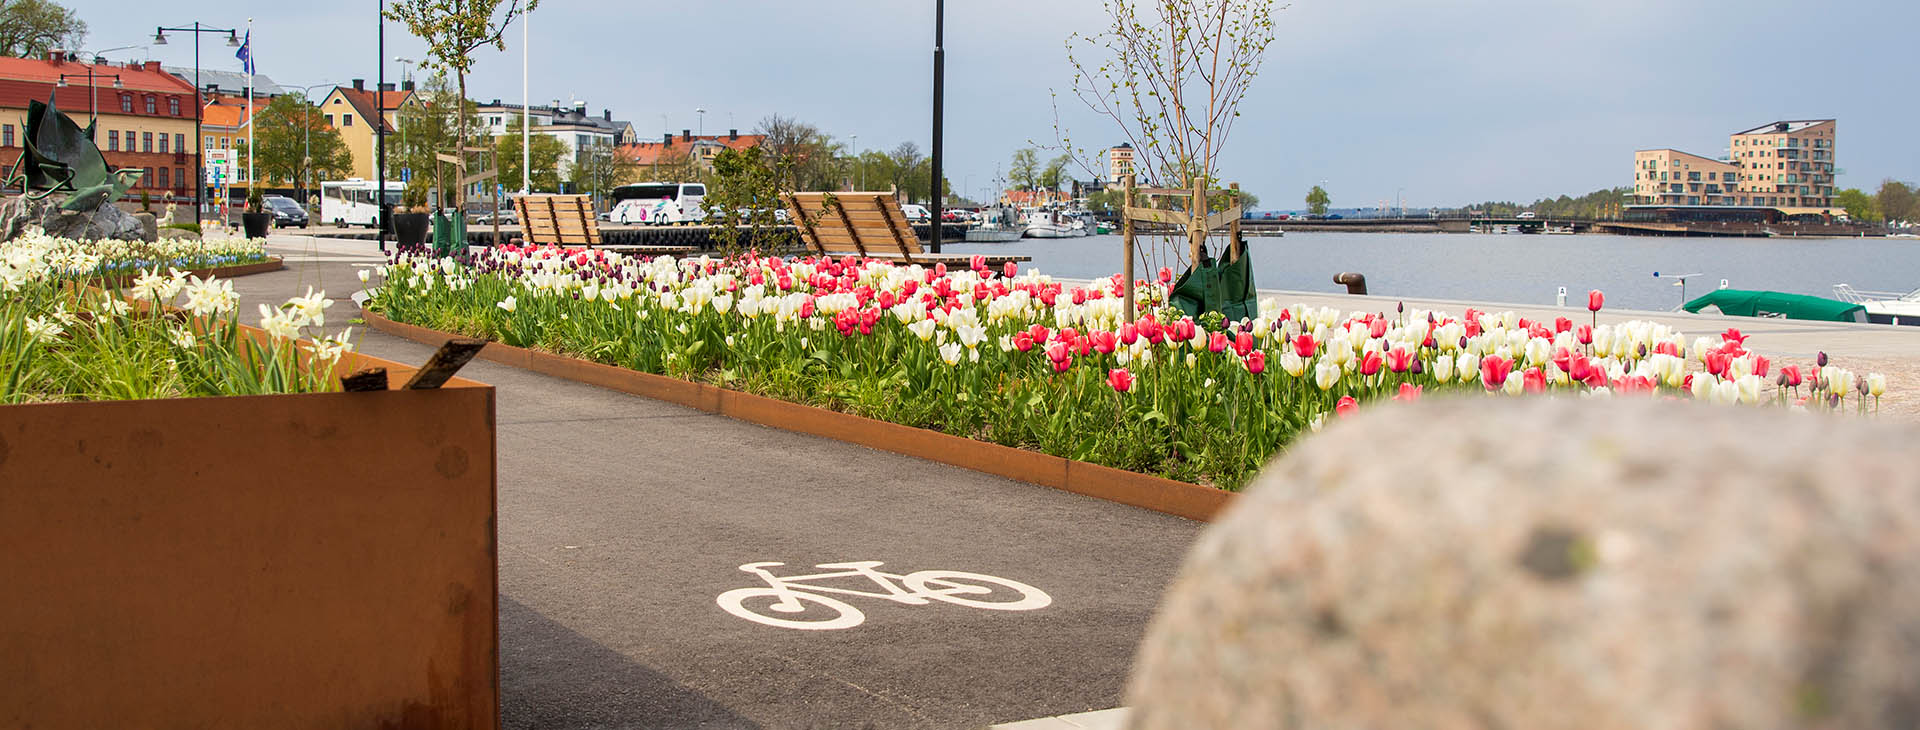 Cykelbana vid blommande tulpaner. 